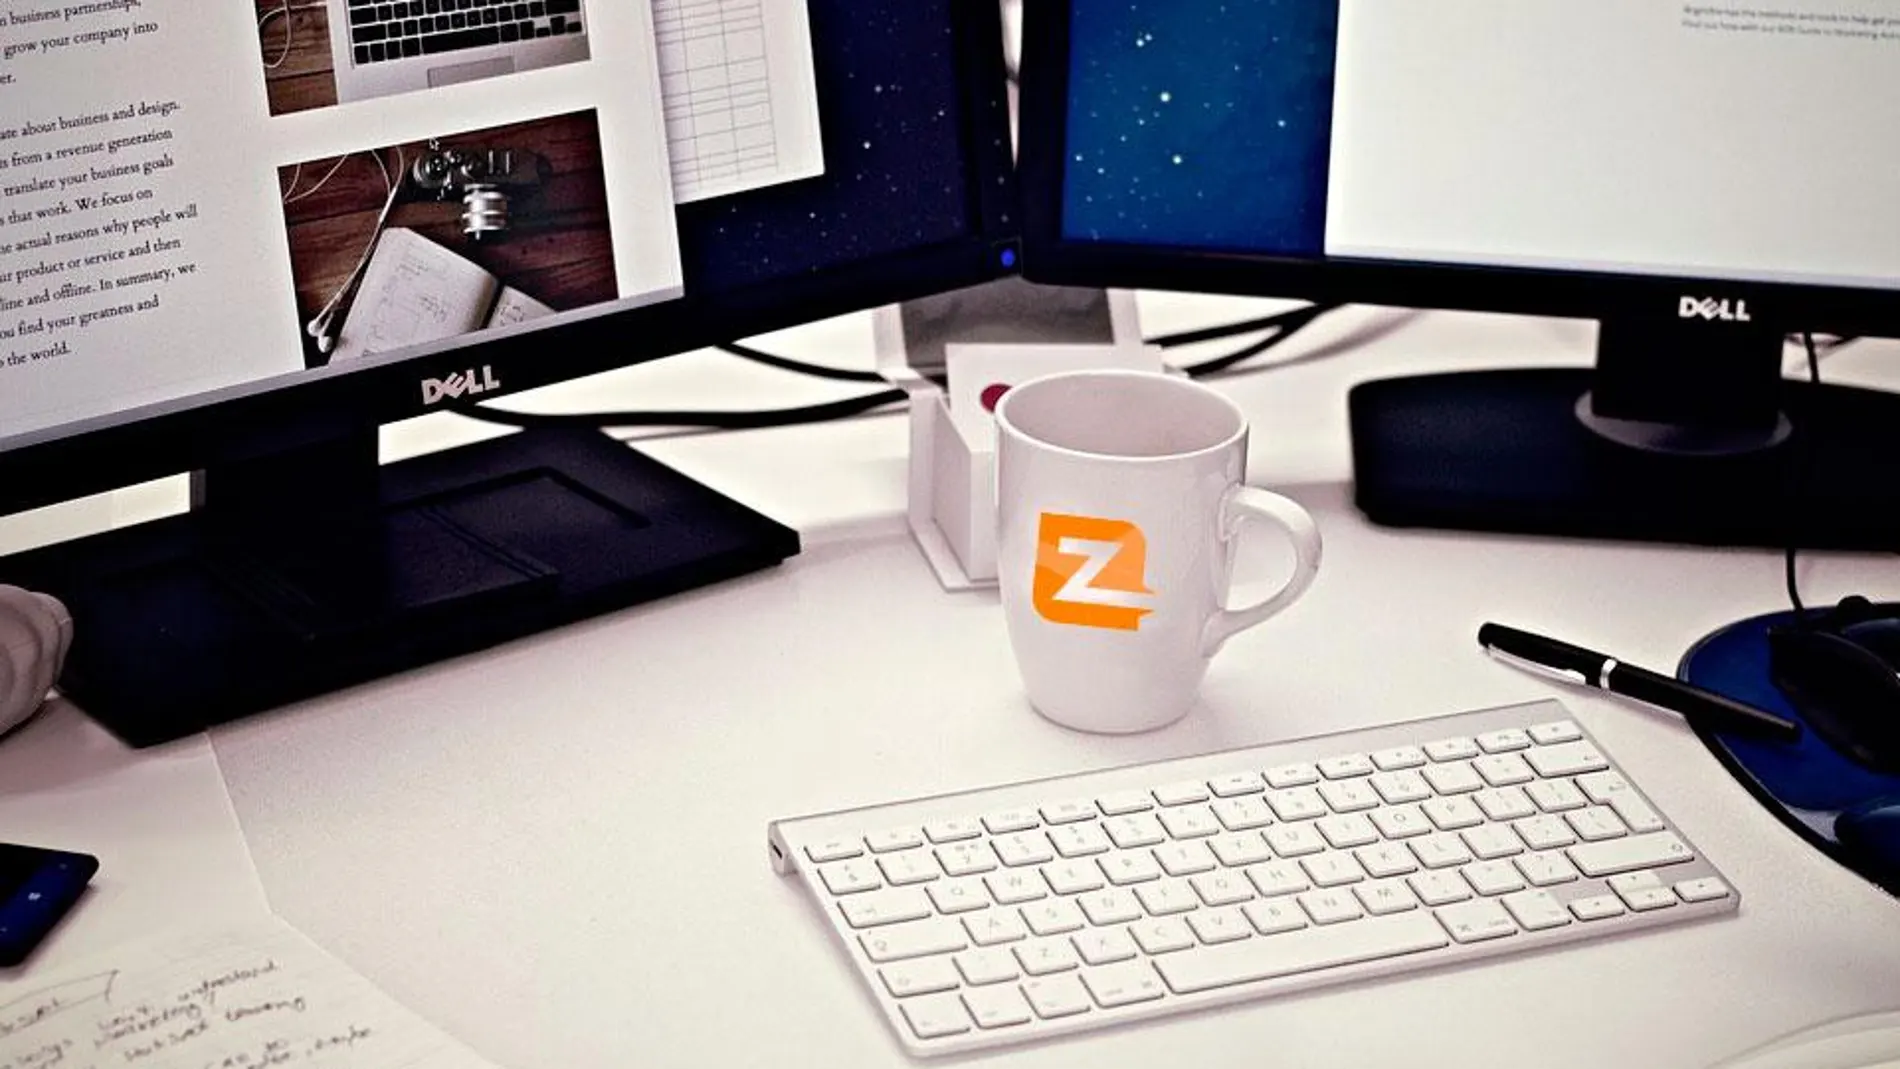 Zetric Brand Agency, referente en la ayuda digital a empresas